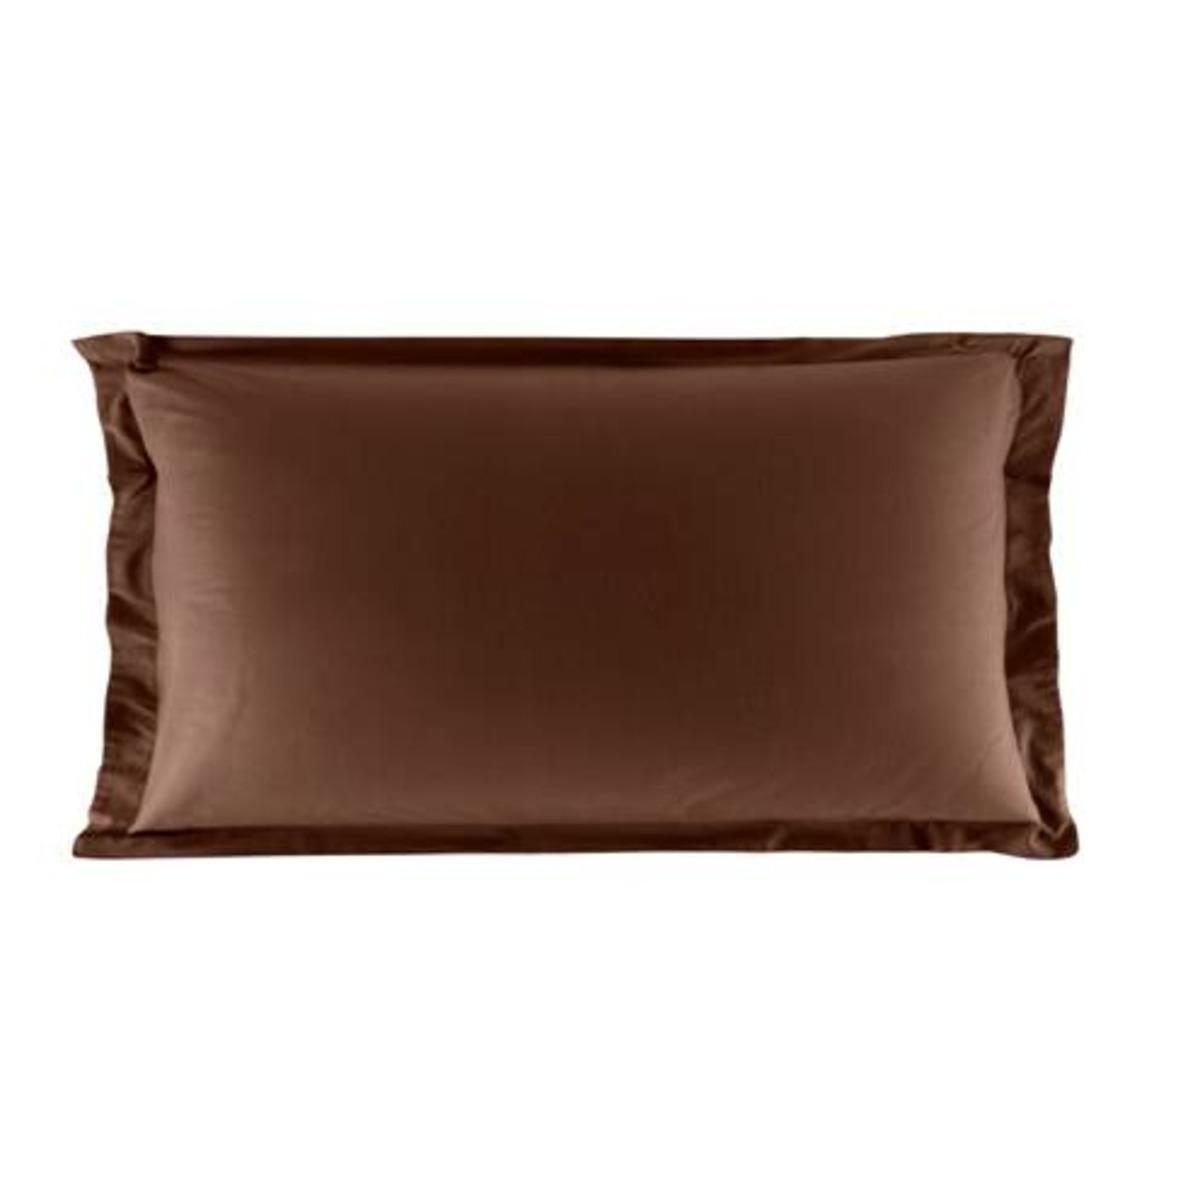 Taie d'oreiller volant plat 100% coton 57 fils 50 x 70 cm - marron chocolat